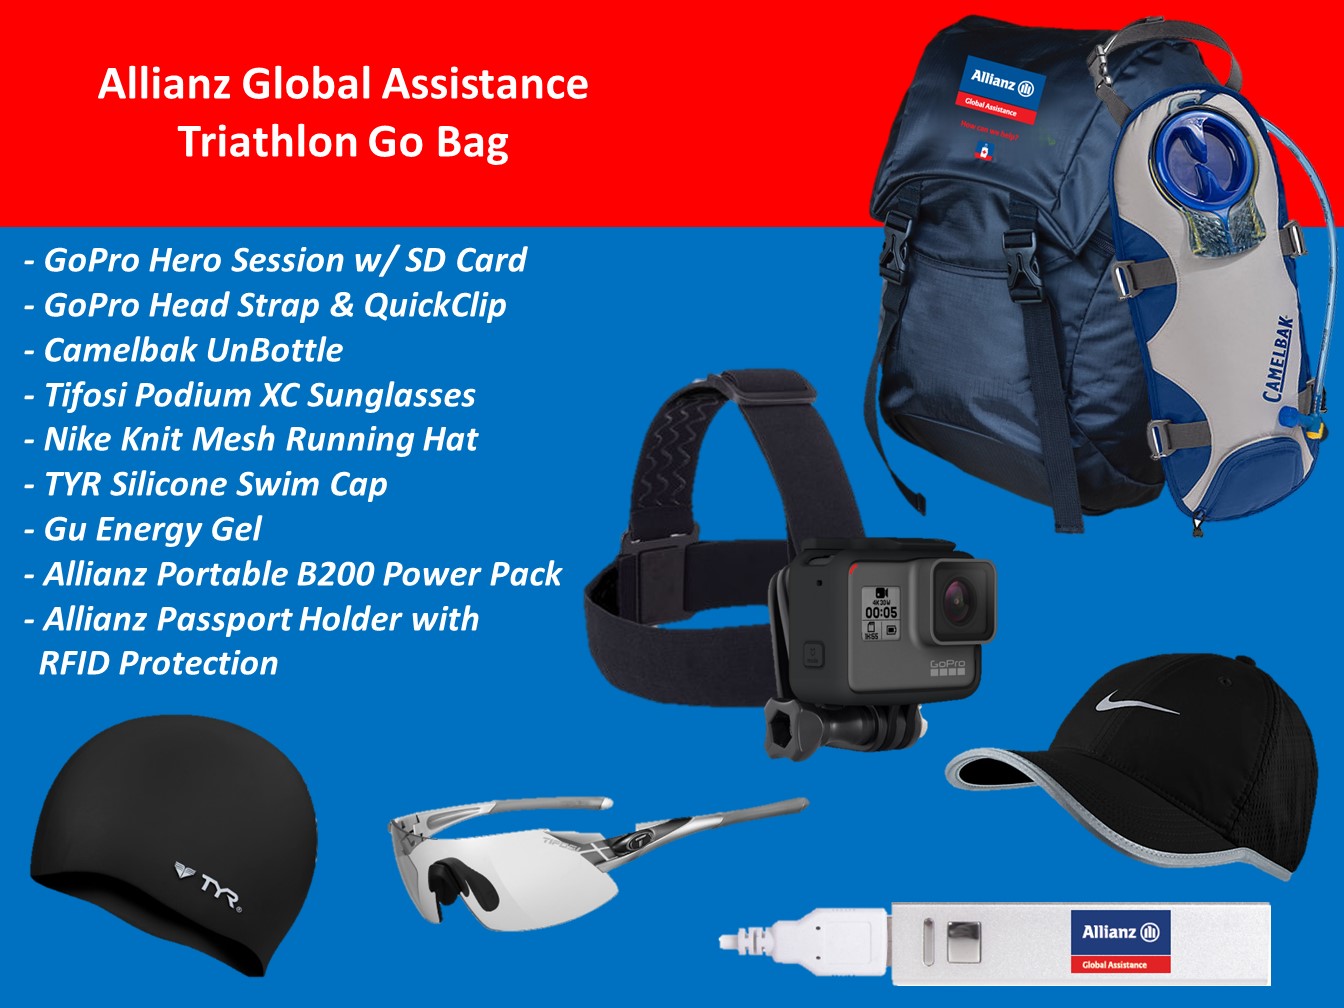 johnny-jet-triathlon-go-bag-giveaway